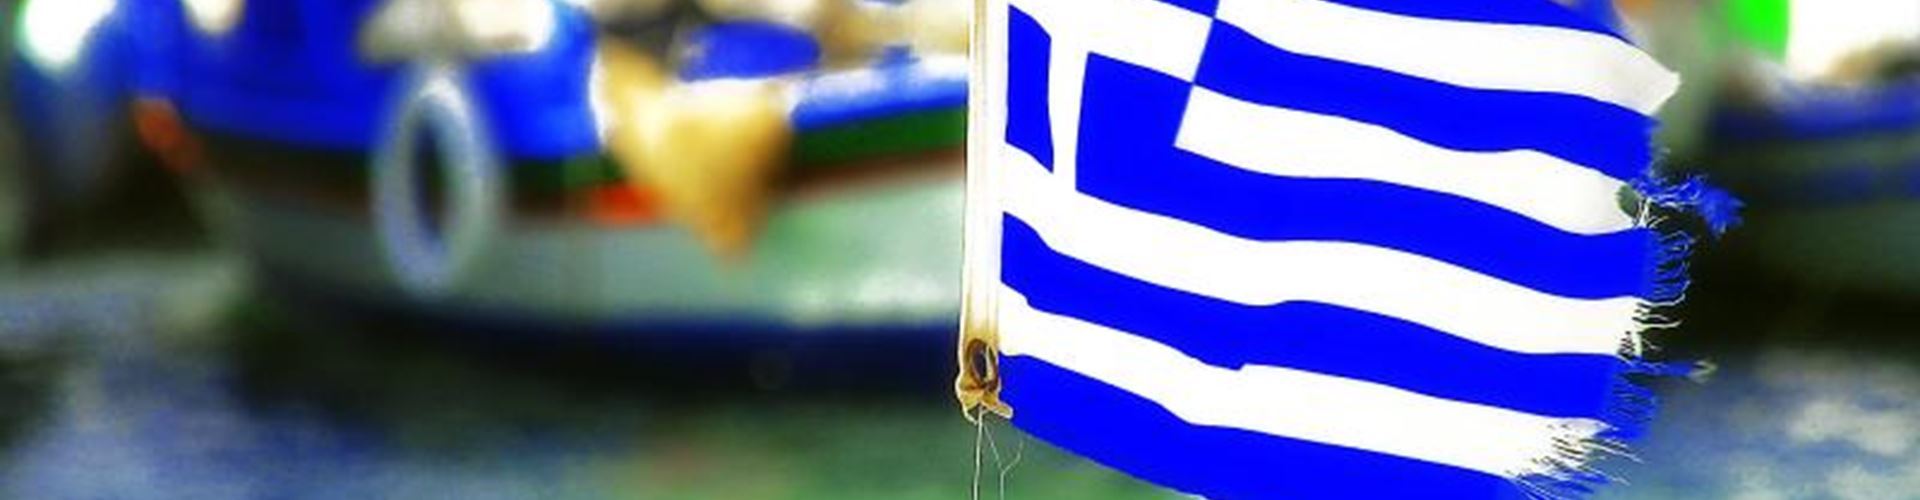 Greek referendum: global markets feel impact as Greece rejects austerity